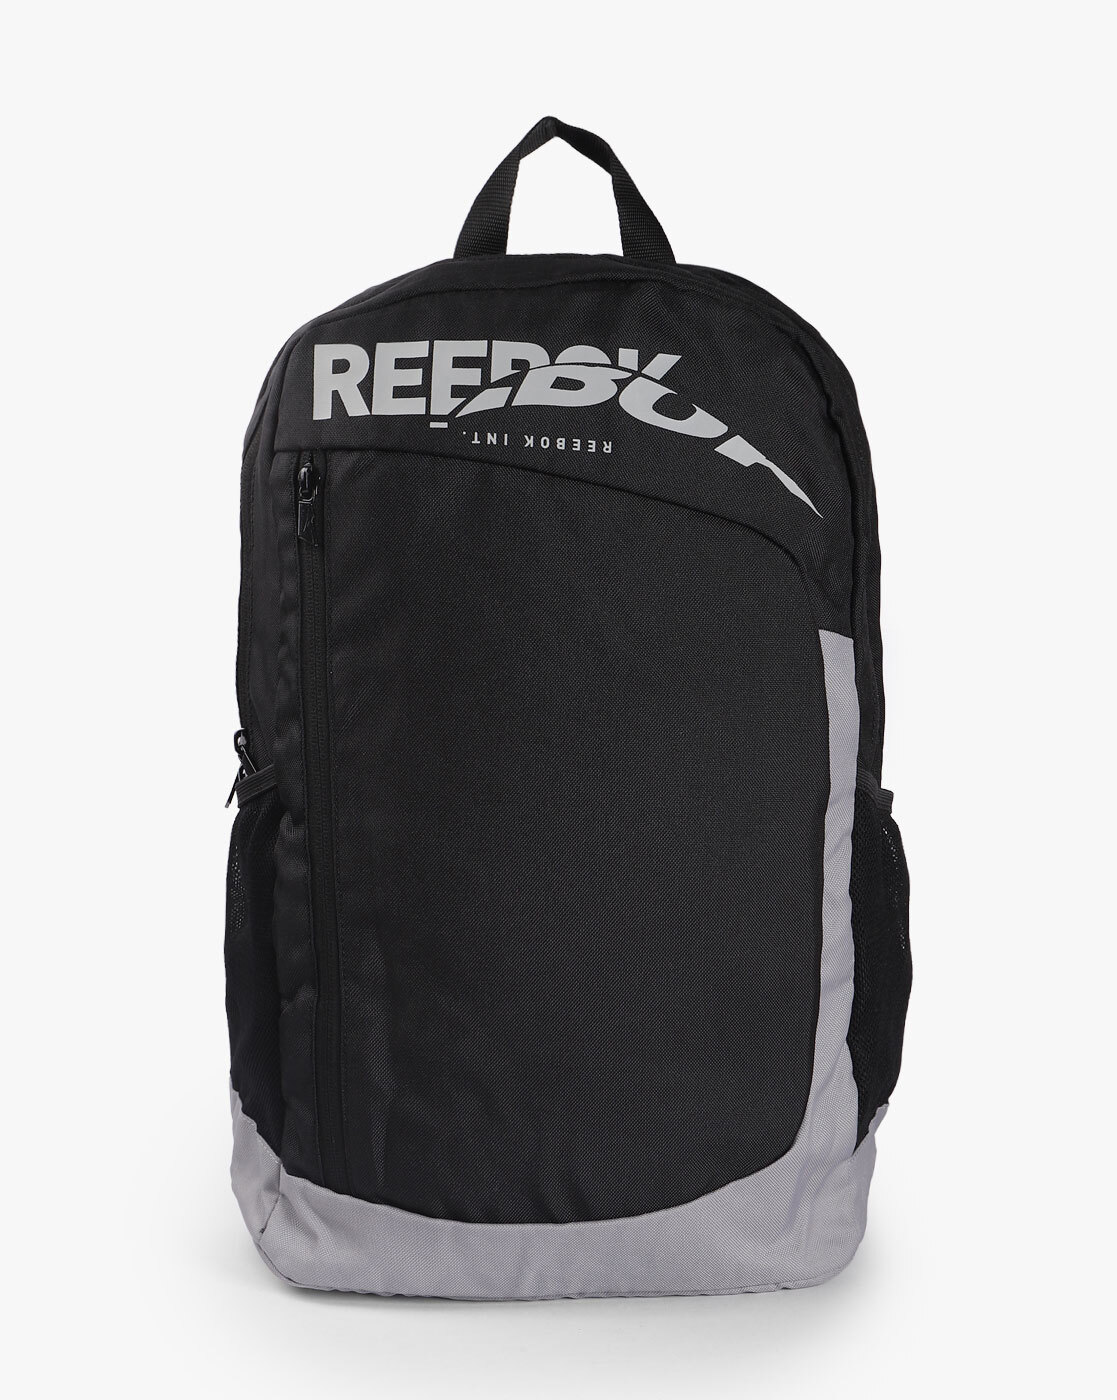 reebok backpack online